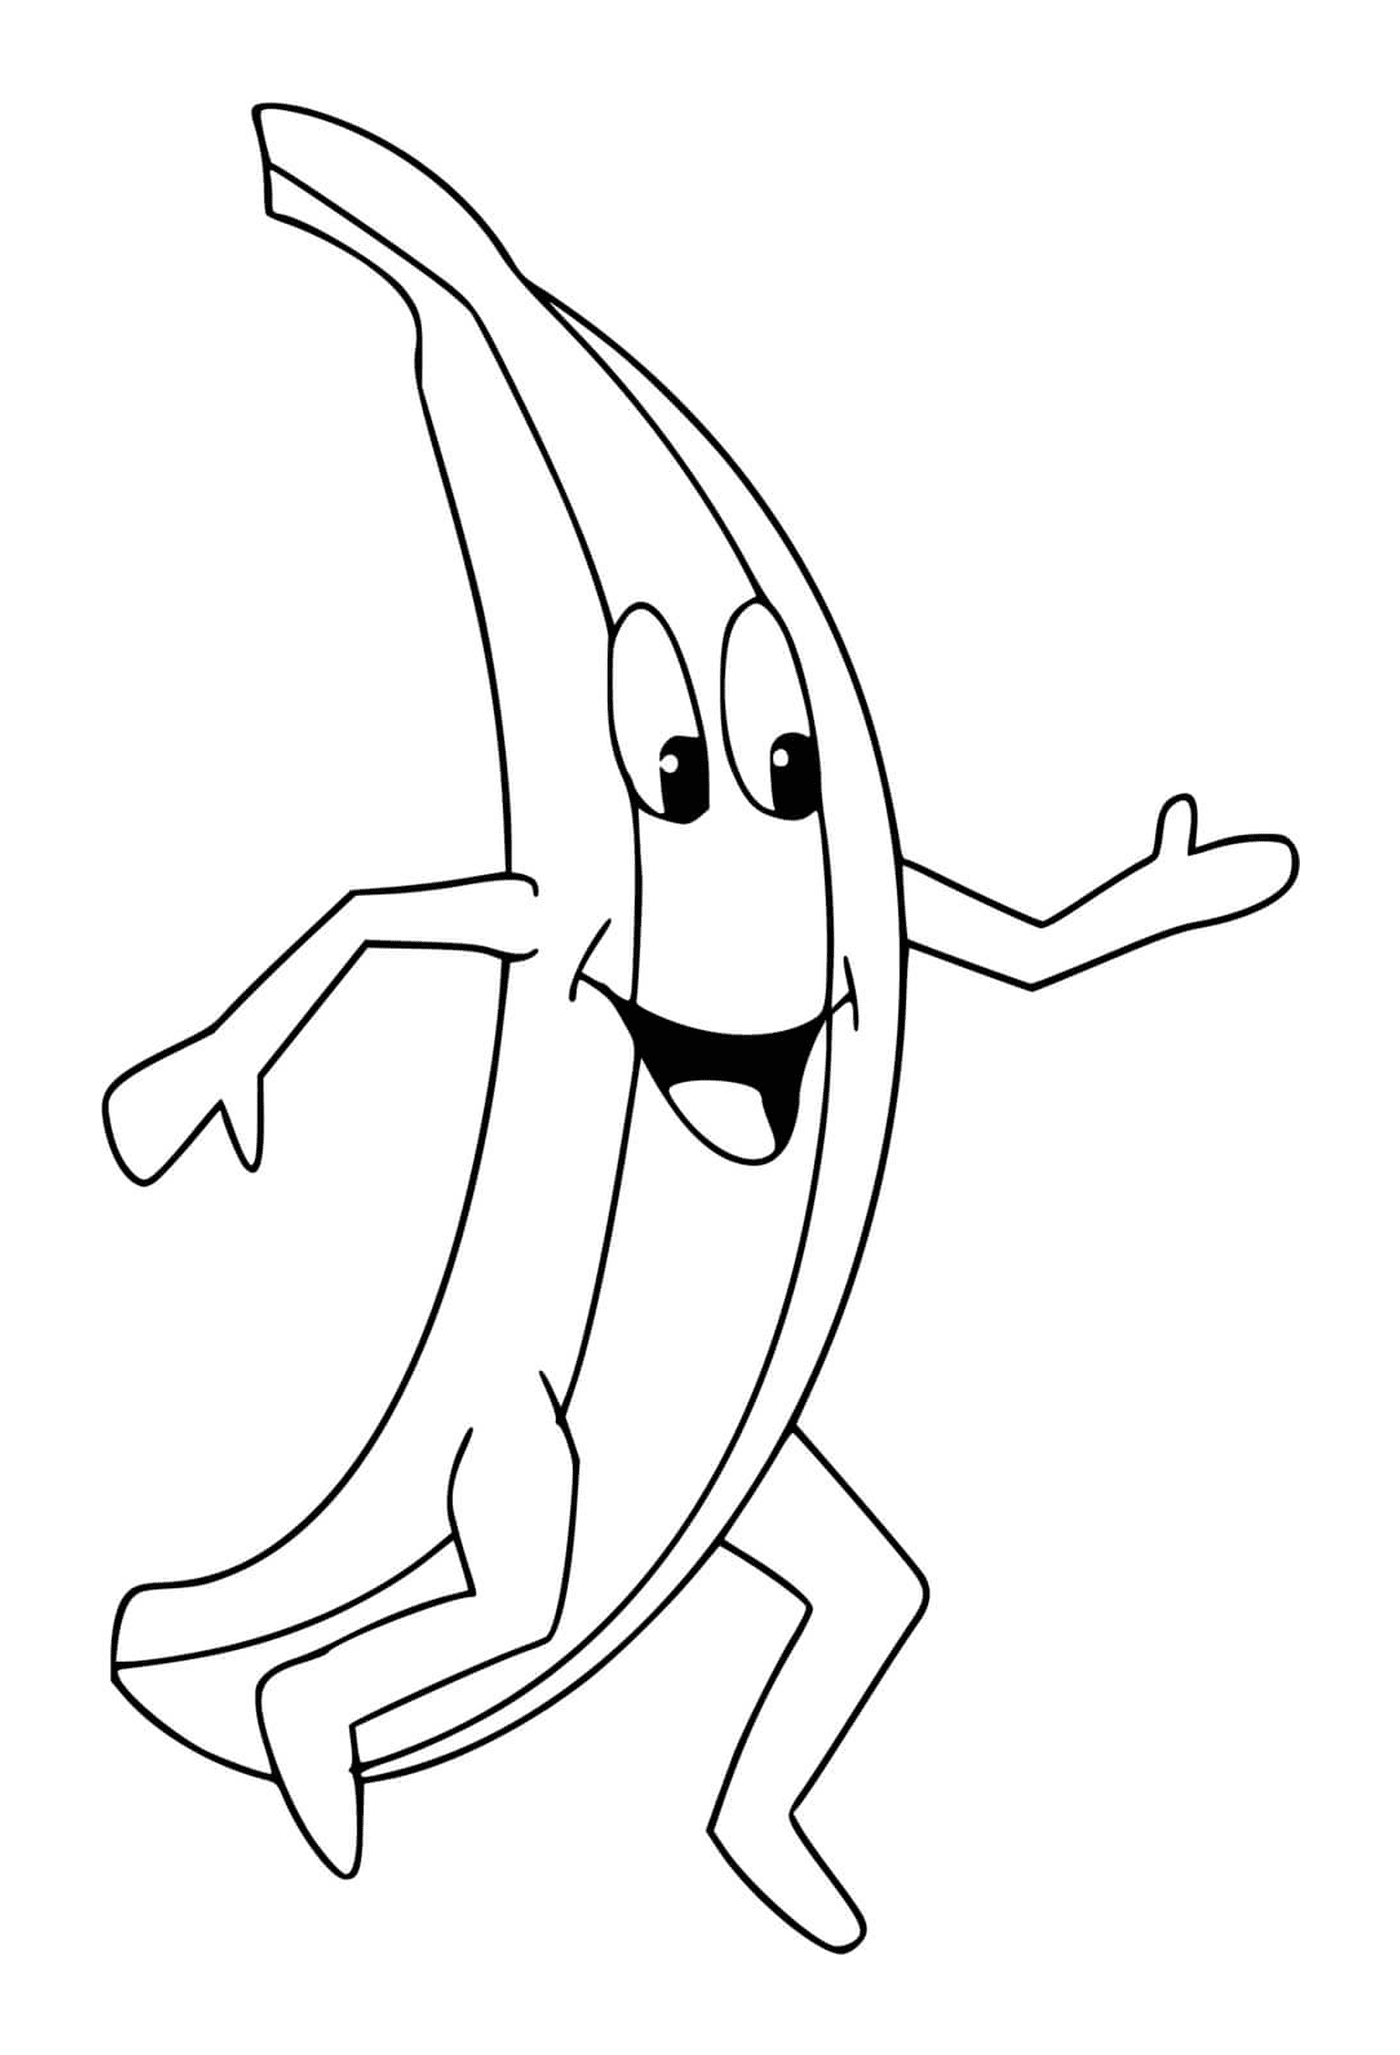  Una banana 